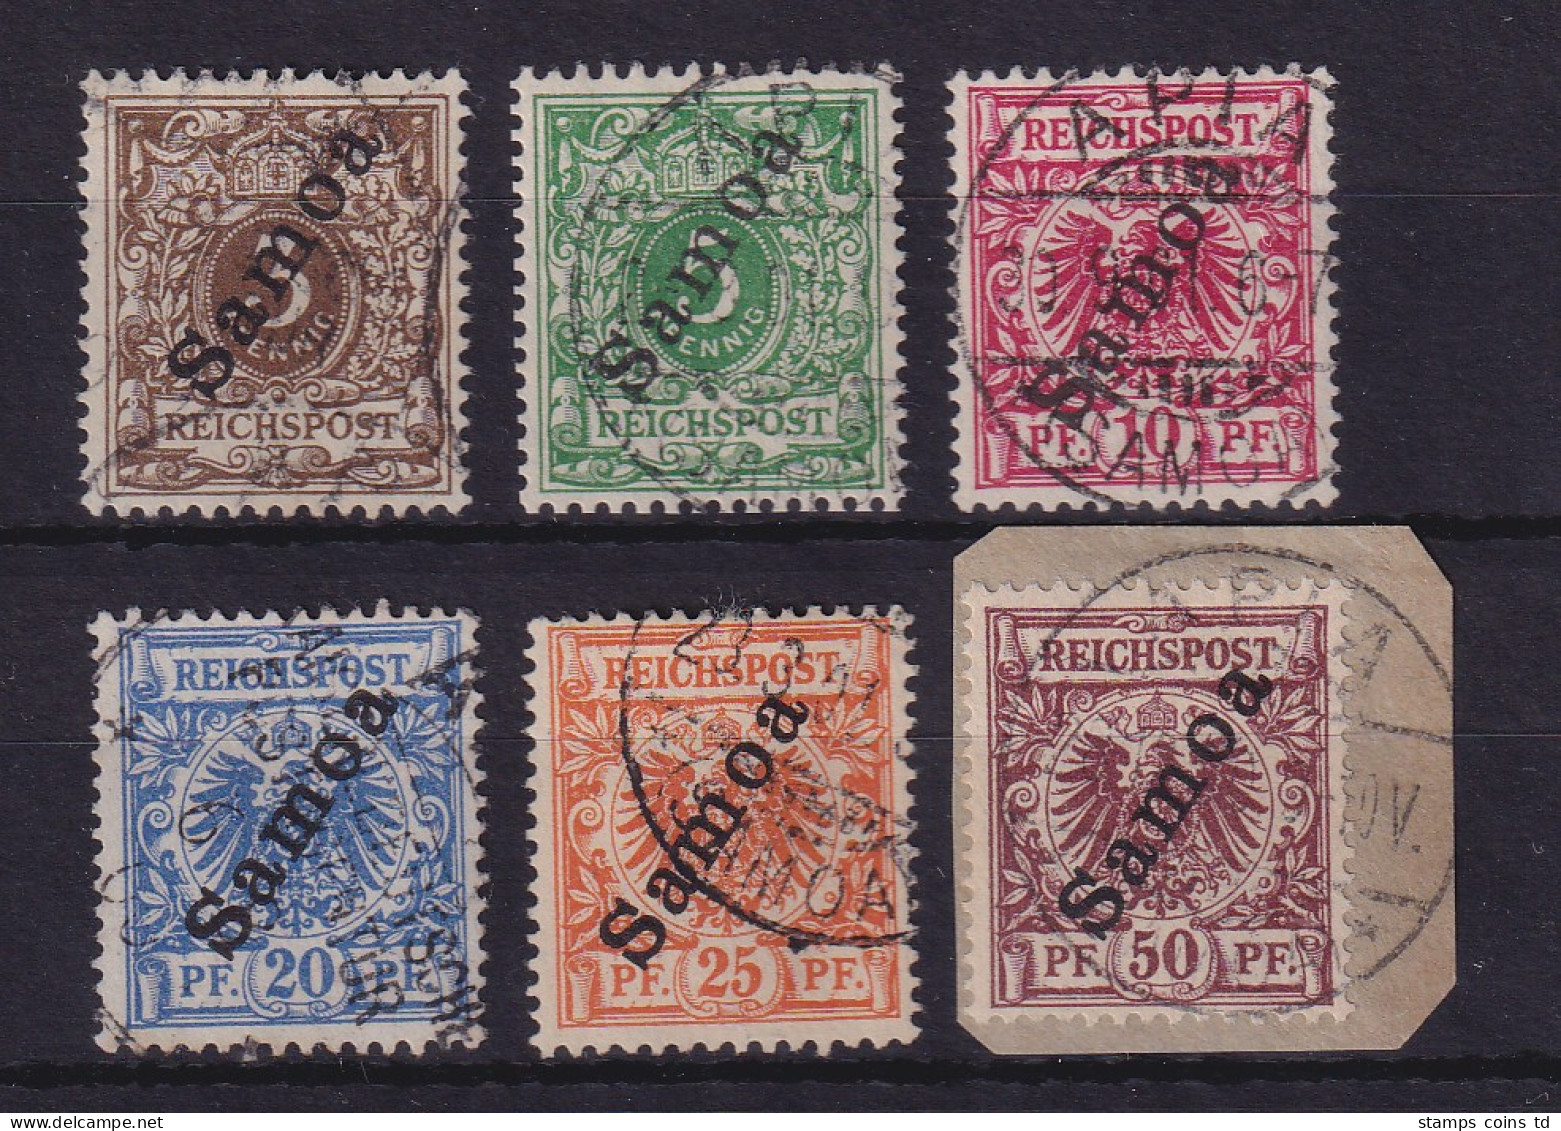 Deutsche Kolonien Samoa 1900  Pfennig-Werte Mi.-Nr. 7-15 Kpl. Gestempelt - Samoa